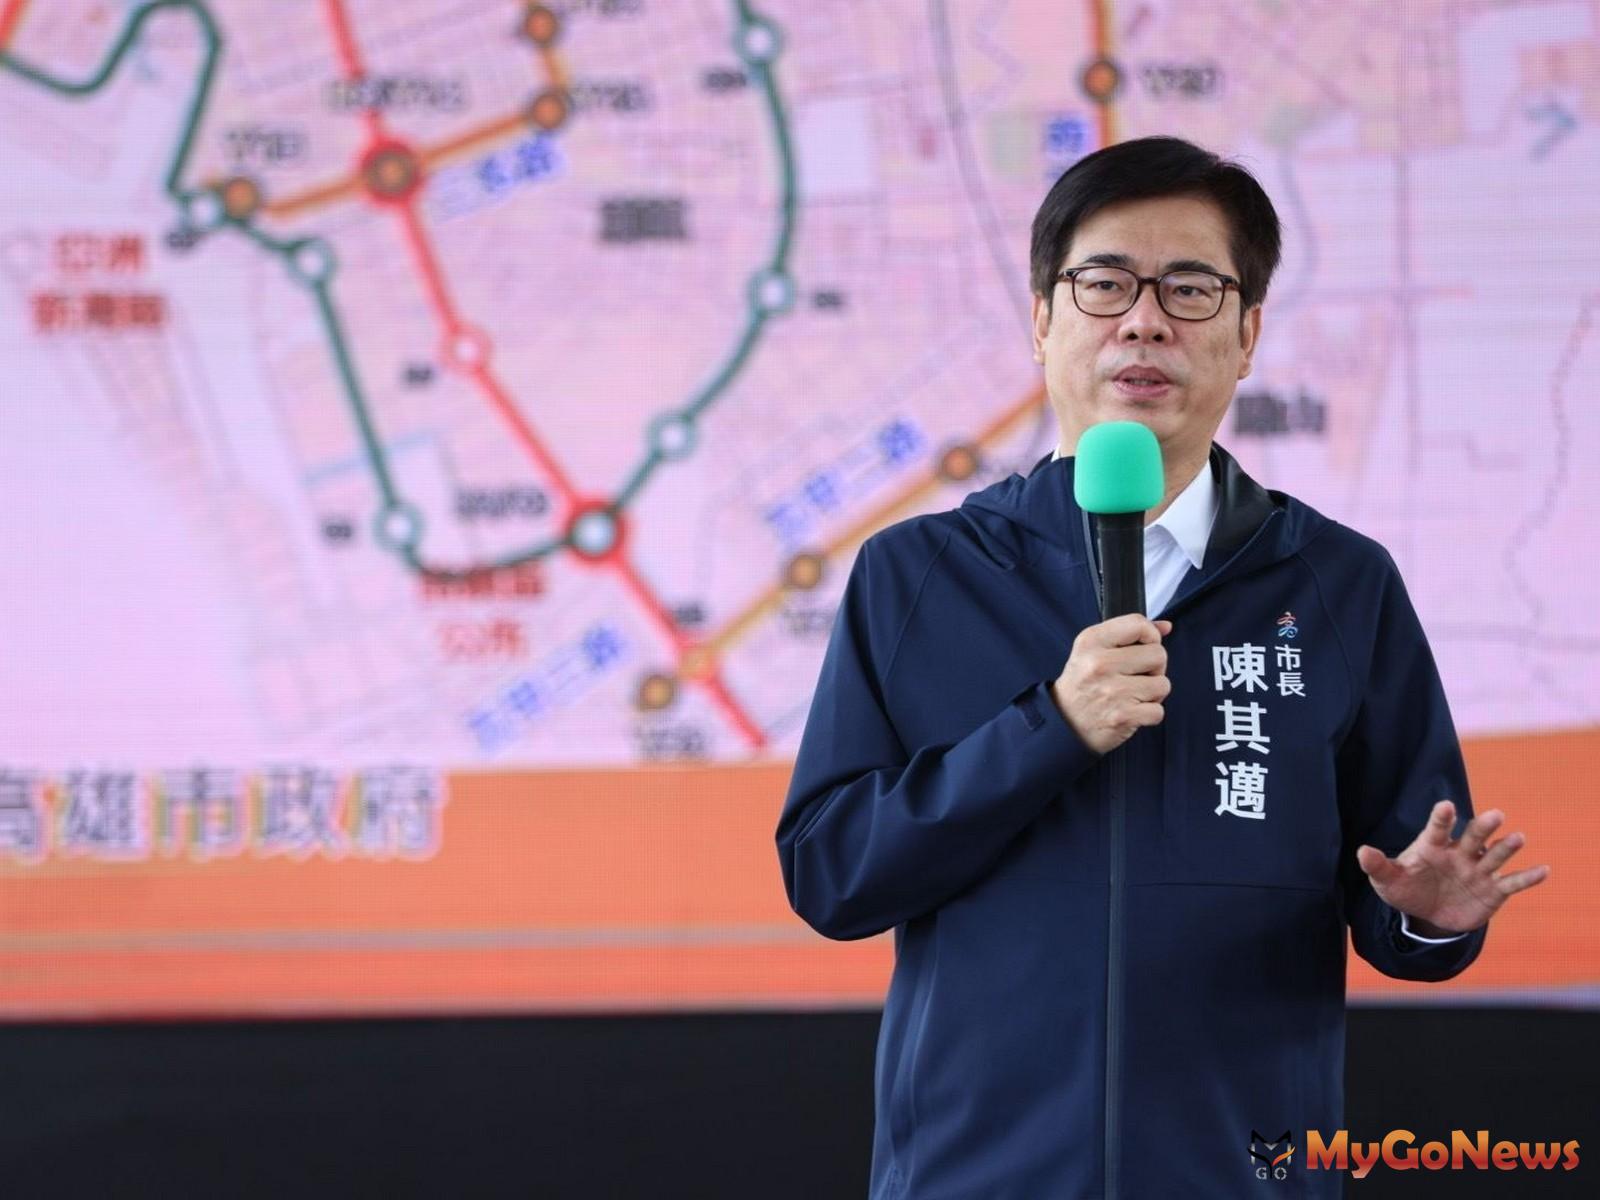 陳其邁感謝中央支持高雄捷運路網建設